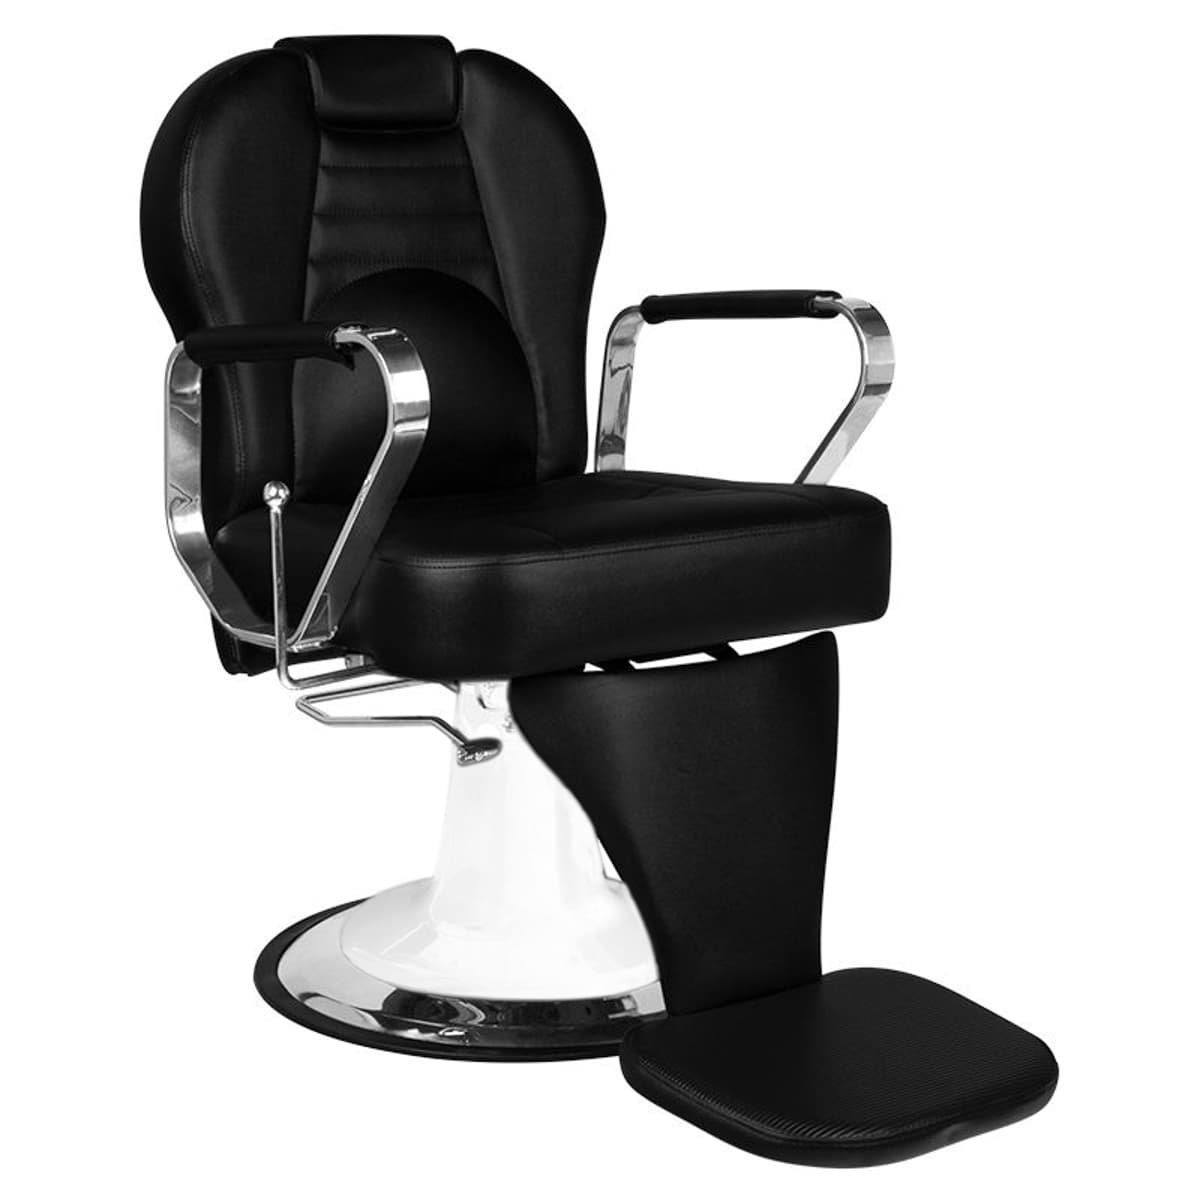 Zdjęcia - Sofa Gabbiano fotel barberski Tiziano biało czarny 